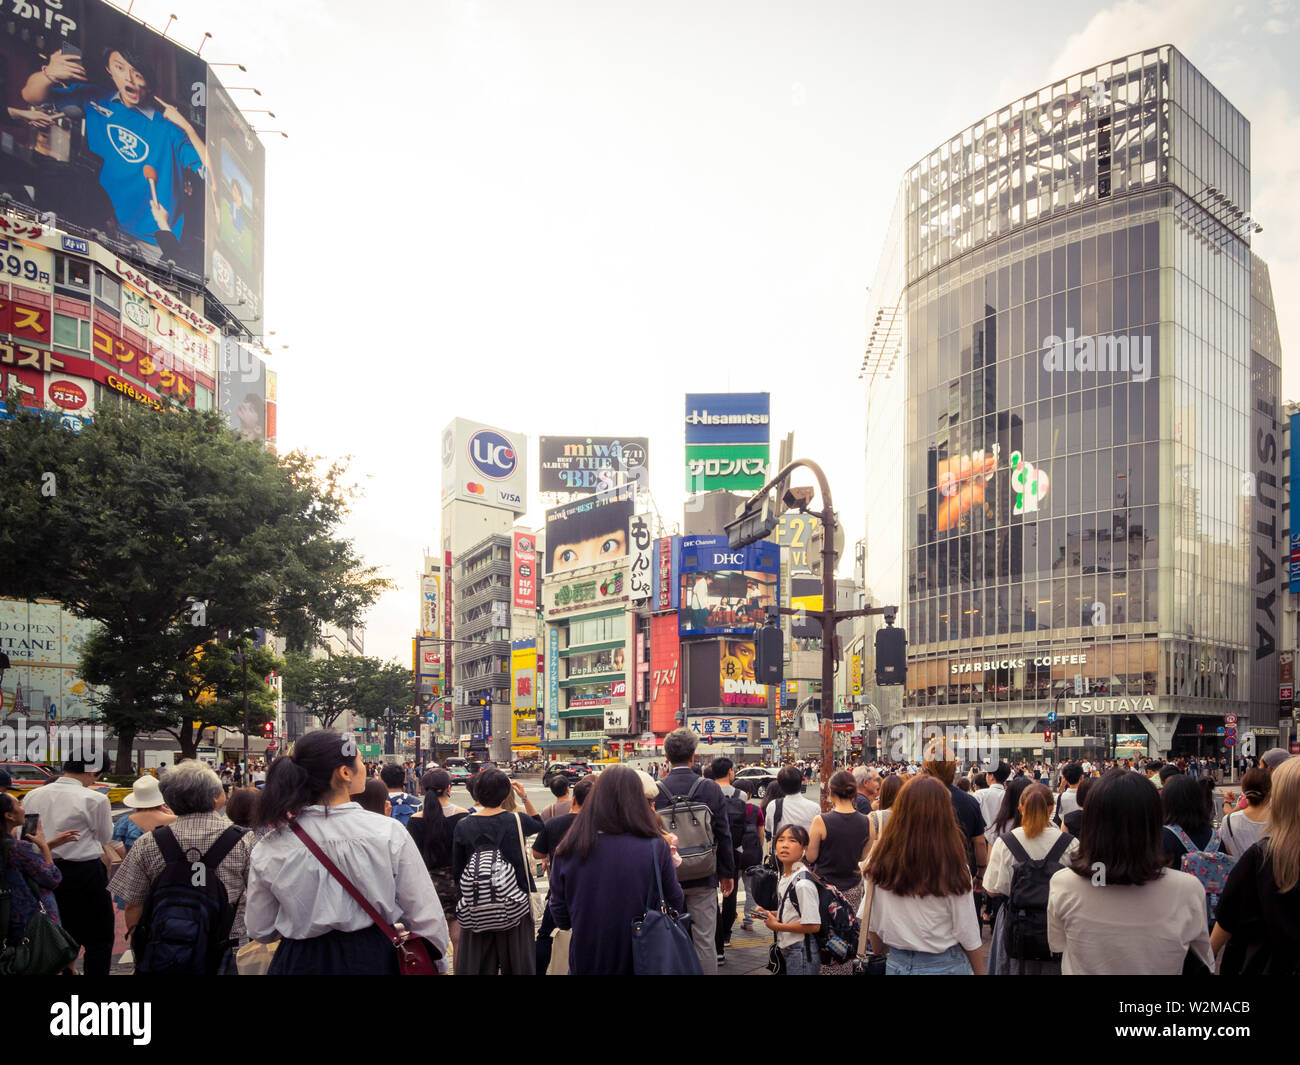 L'animation de Shibuya scramble crossing (croisement de Shibuya), réputé pour être le plus achalandé en concordance le monde. Shibuya, Tokyo, Japon. Banque D'Images